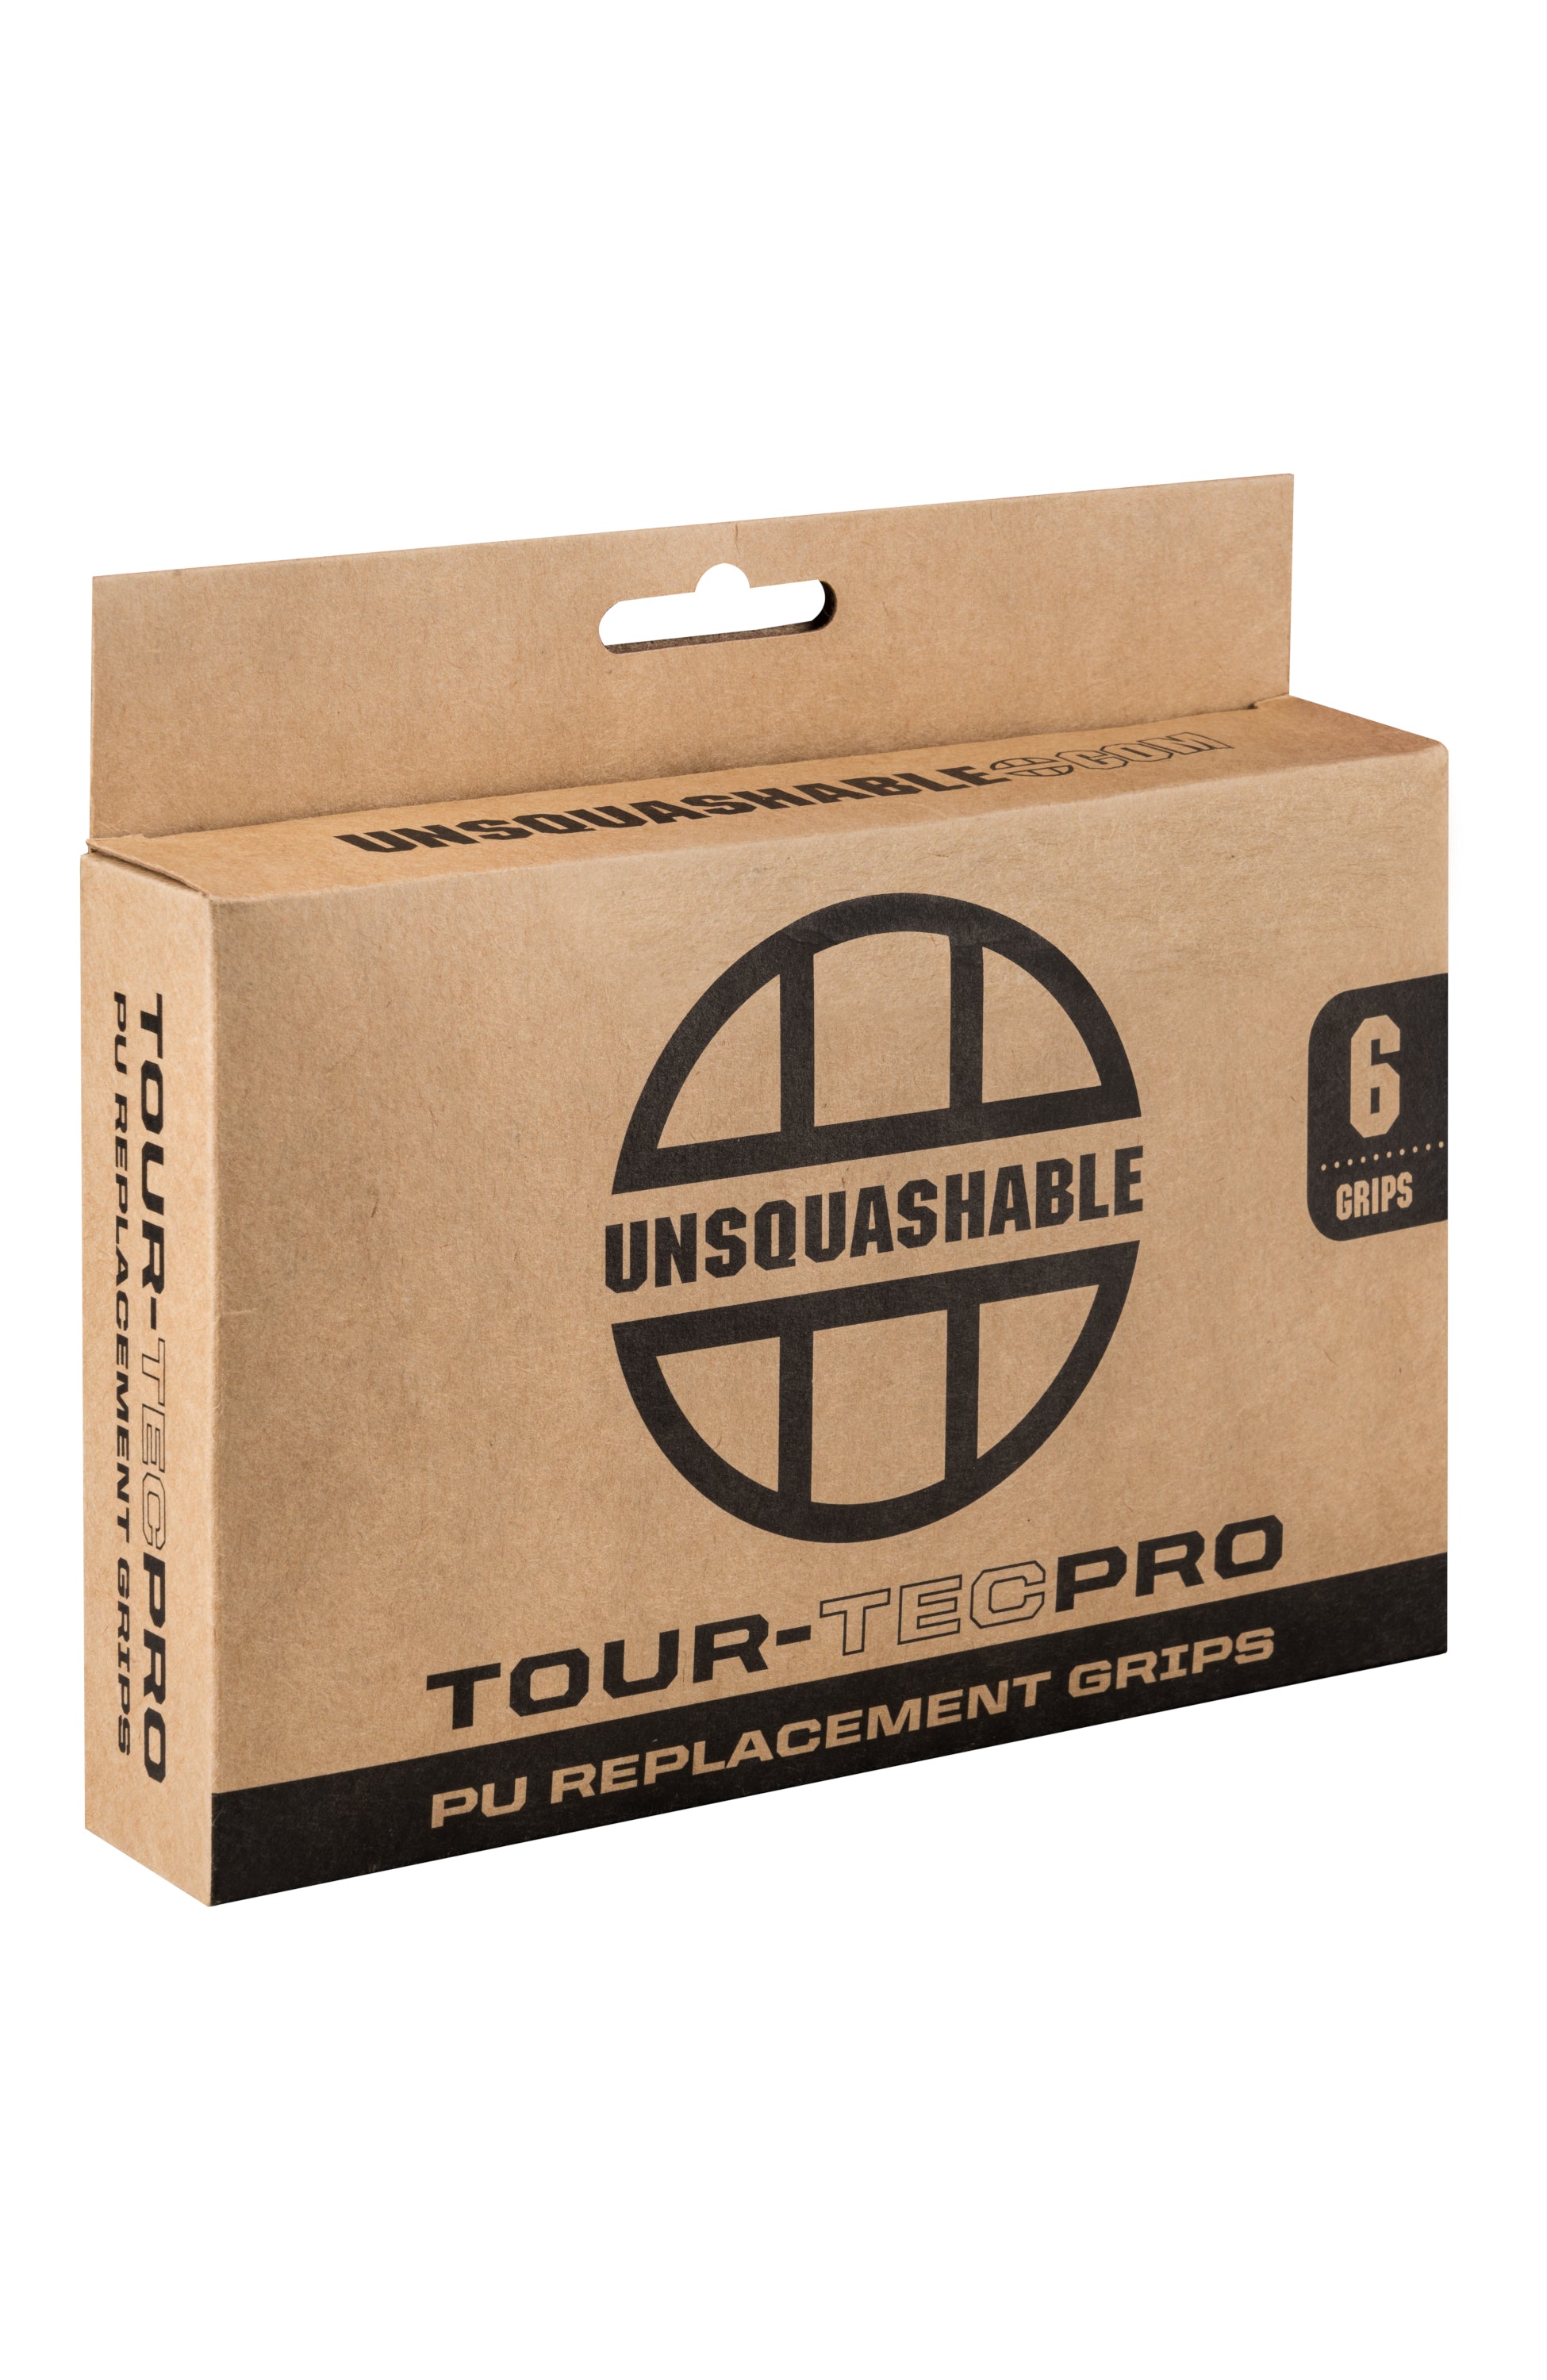 UNSQUASHABLE Tour-Tec Pro PU Squash Grips (6-Pack)